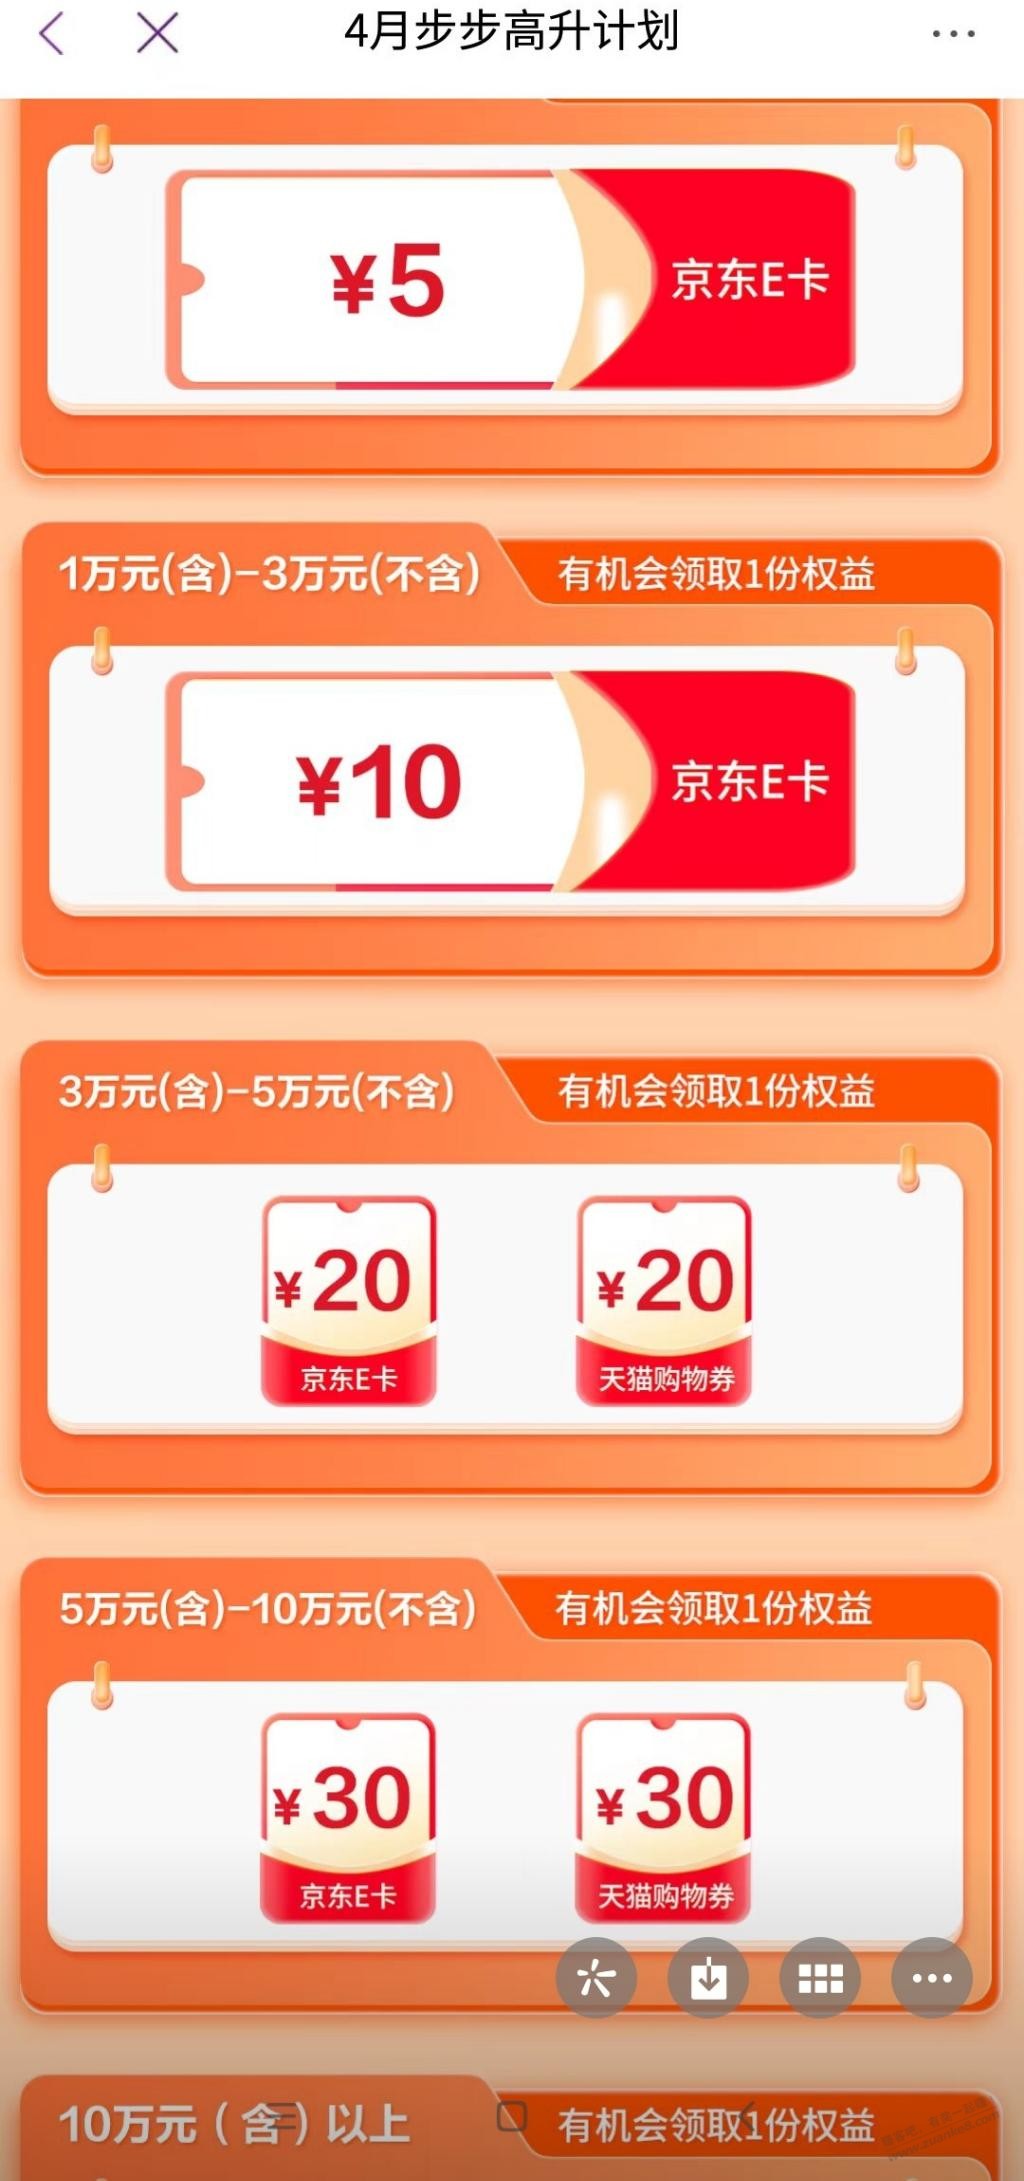 月末资产提升活动-惠小助(52huixz.com)